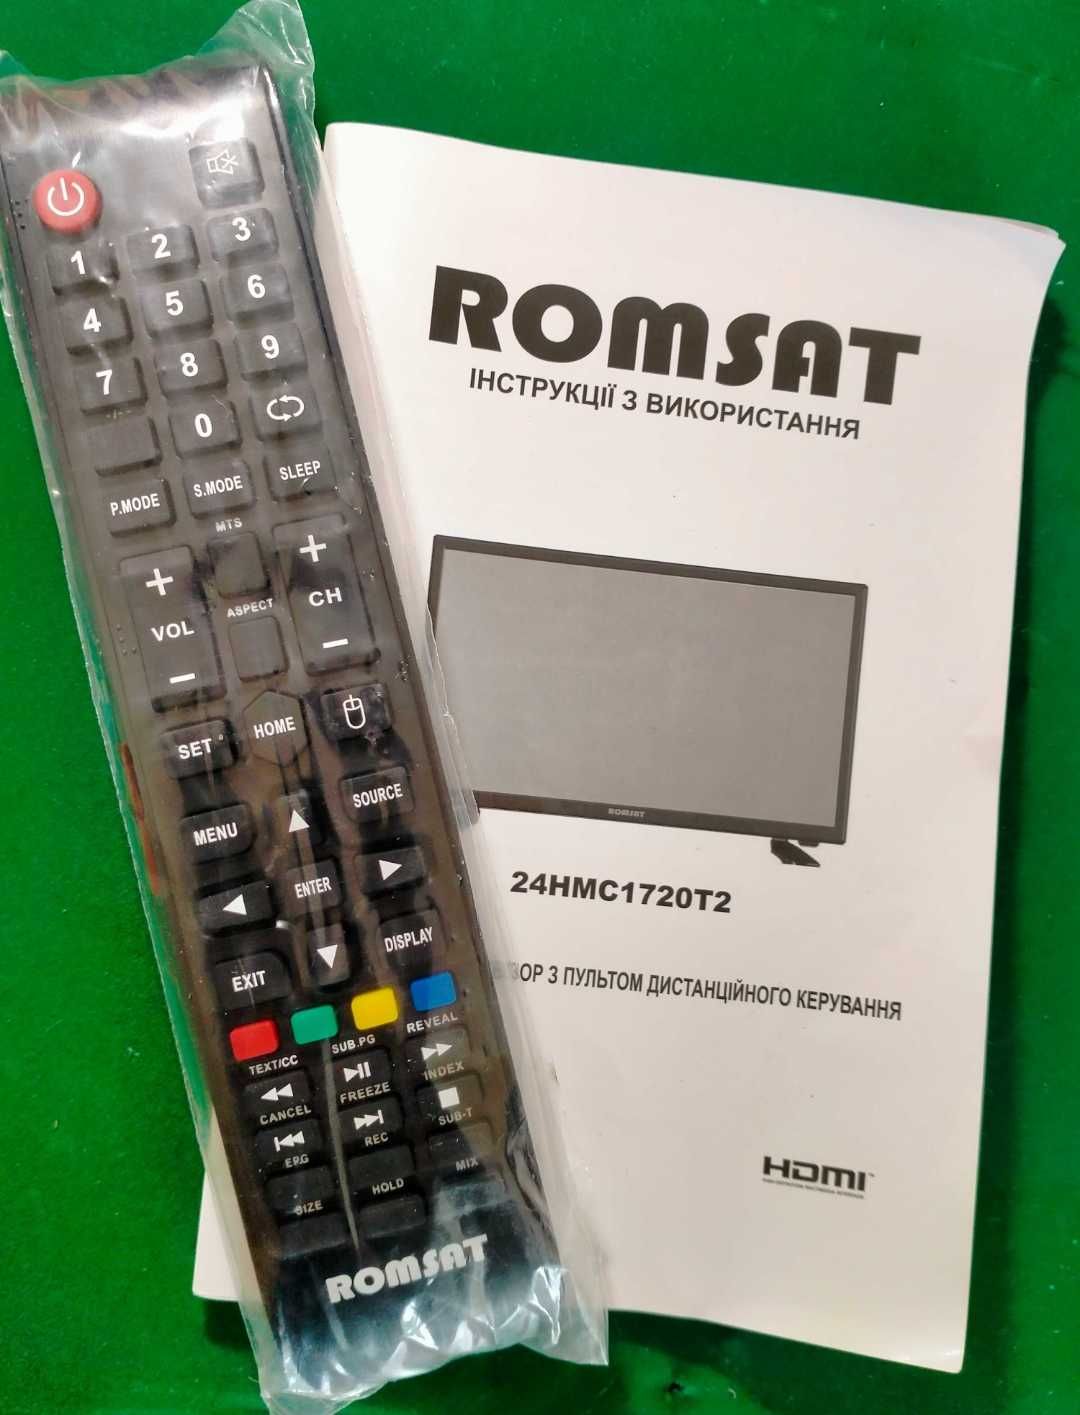 Оригінальний пульт для телевізора Romsat 24hmc1720t2